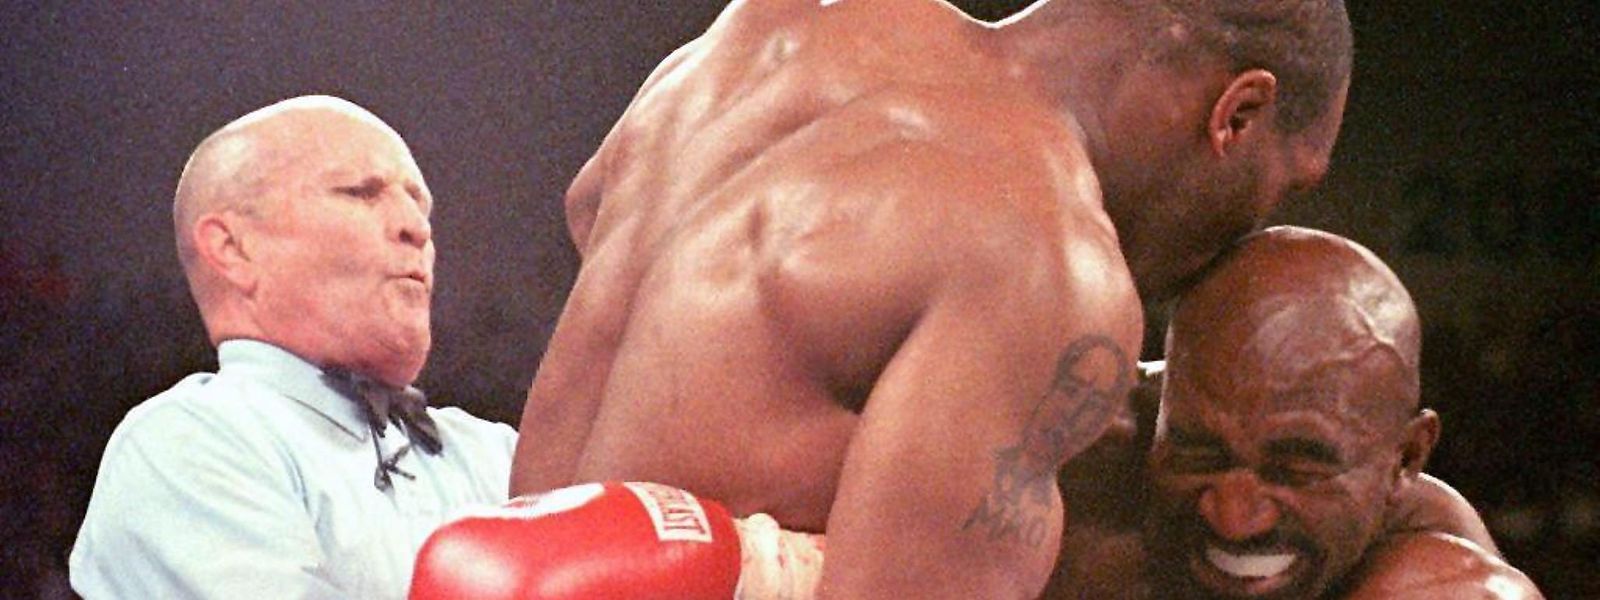 Der damalige Weltmeister im Schwergewicht, Evander Holyfield (r), verzieht das Gesicht, nachdem ihn sein Herausforderer Mike Tyson (M) ins Ohr gebissen hat.